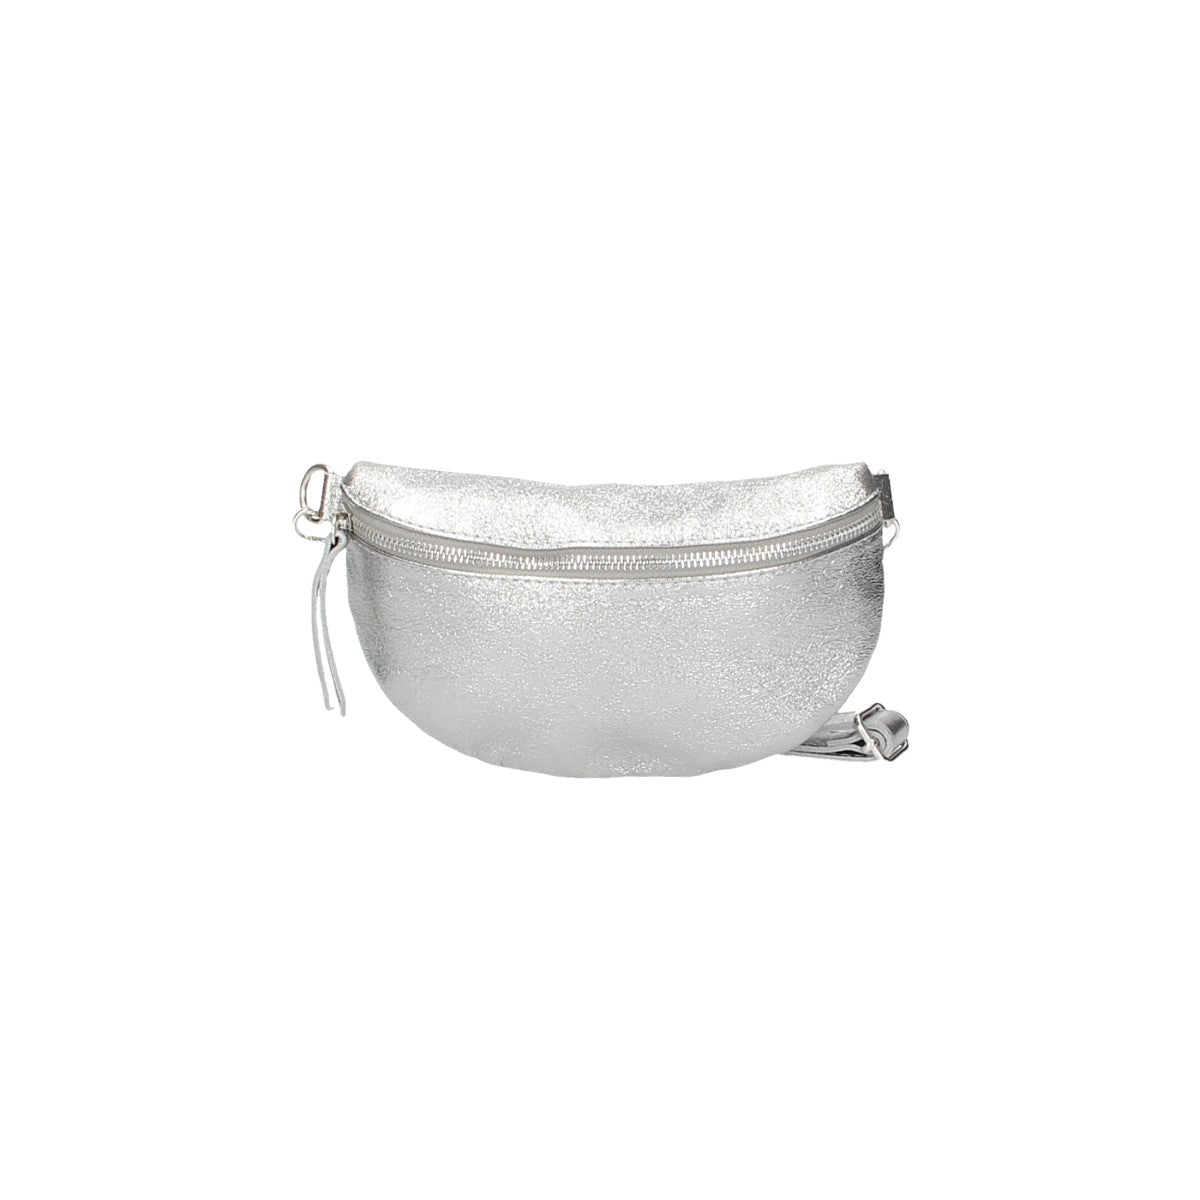 Bodybag|Gürteltasche klein in Silber Leder